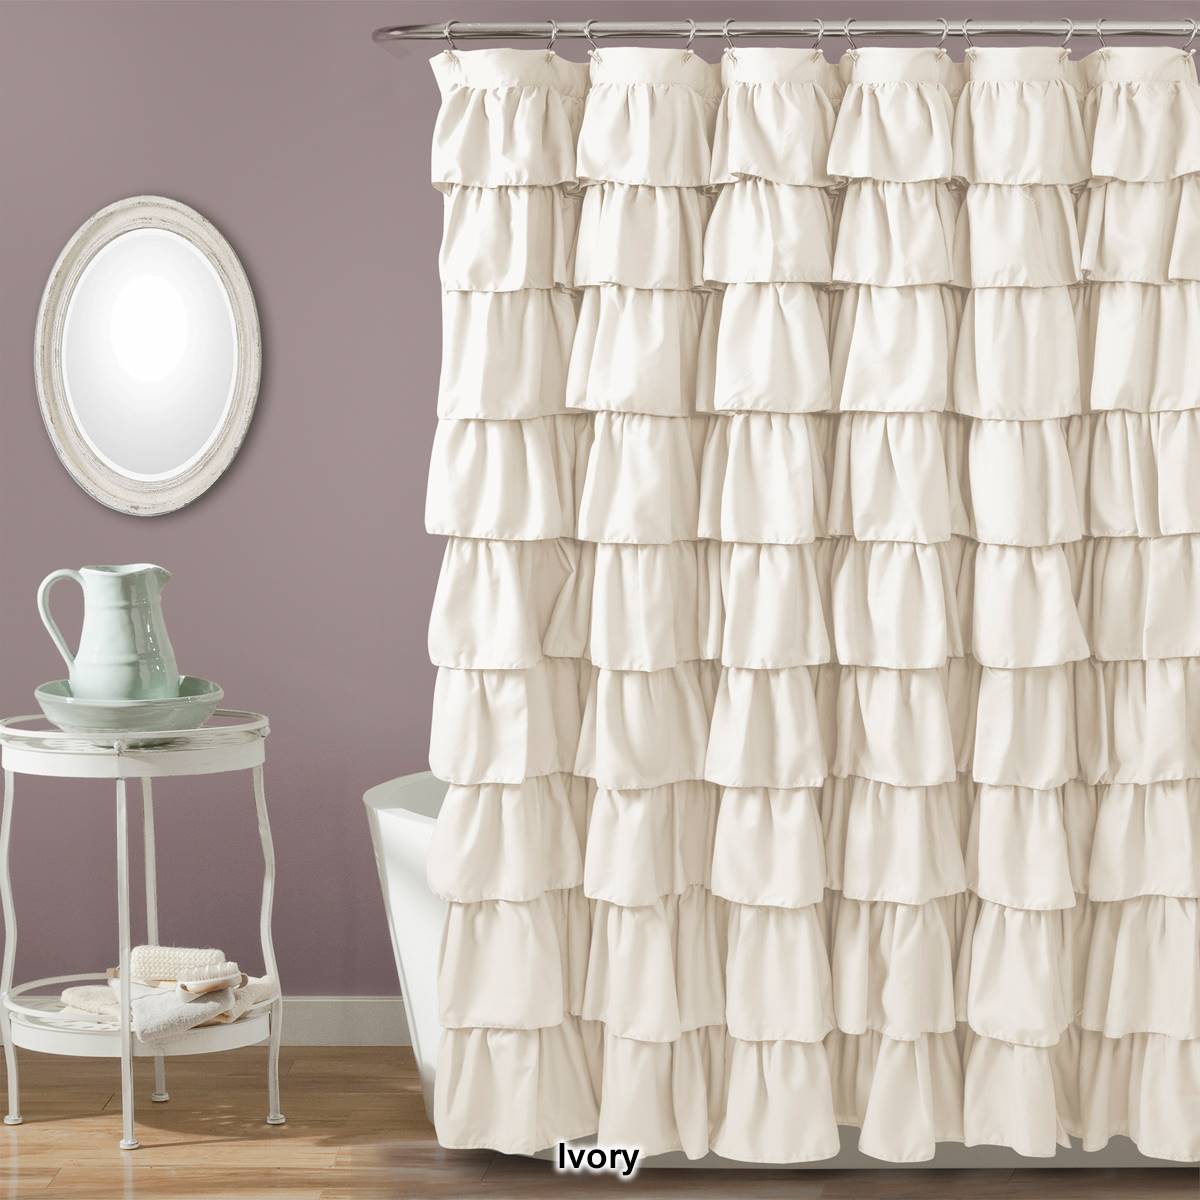 Lush Decor(R) Ruffle Shower Curtain